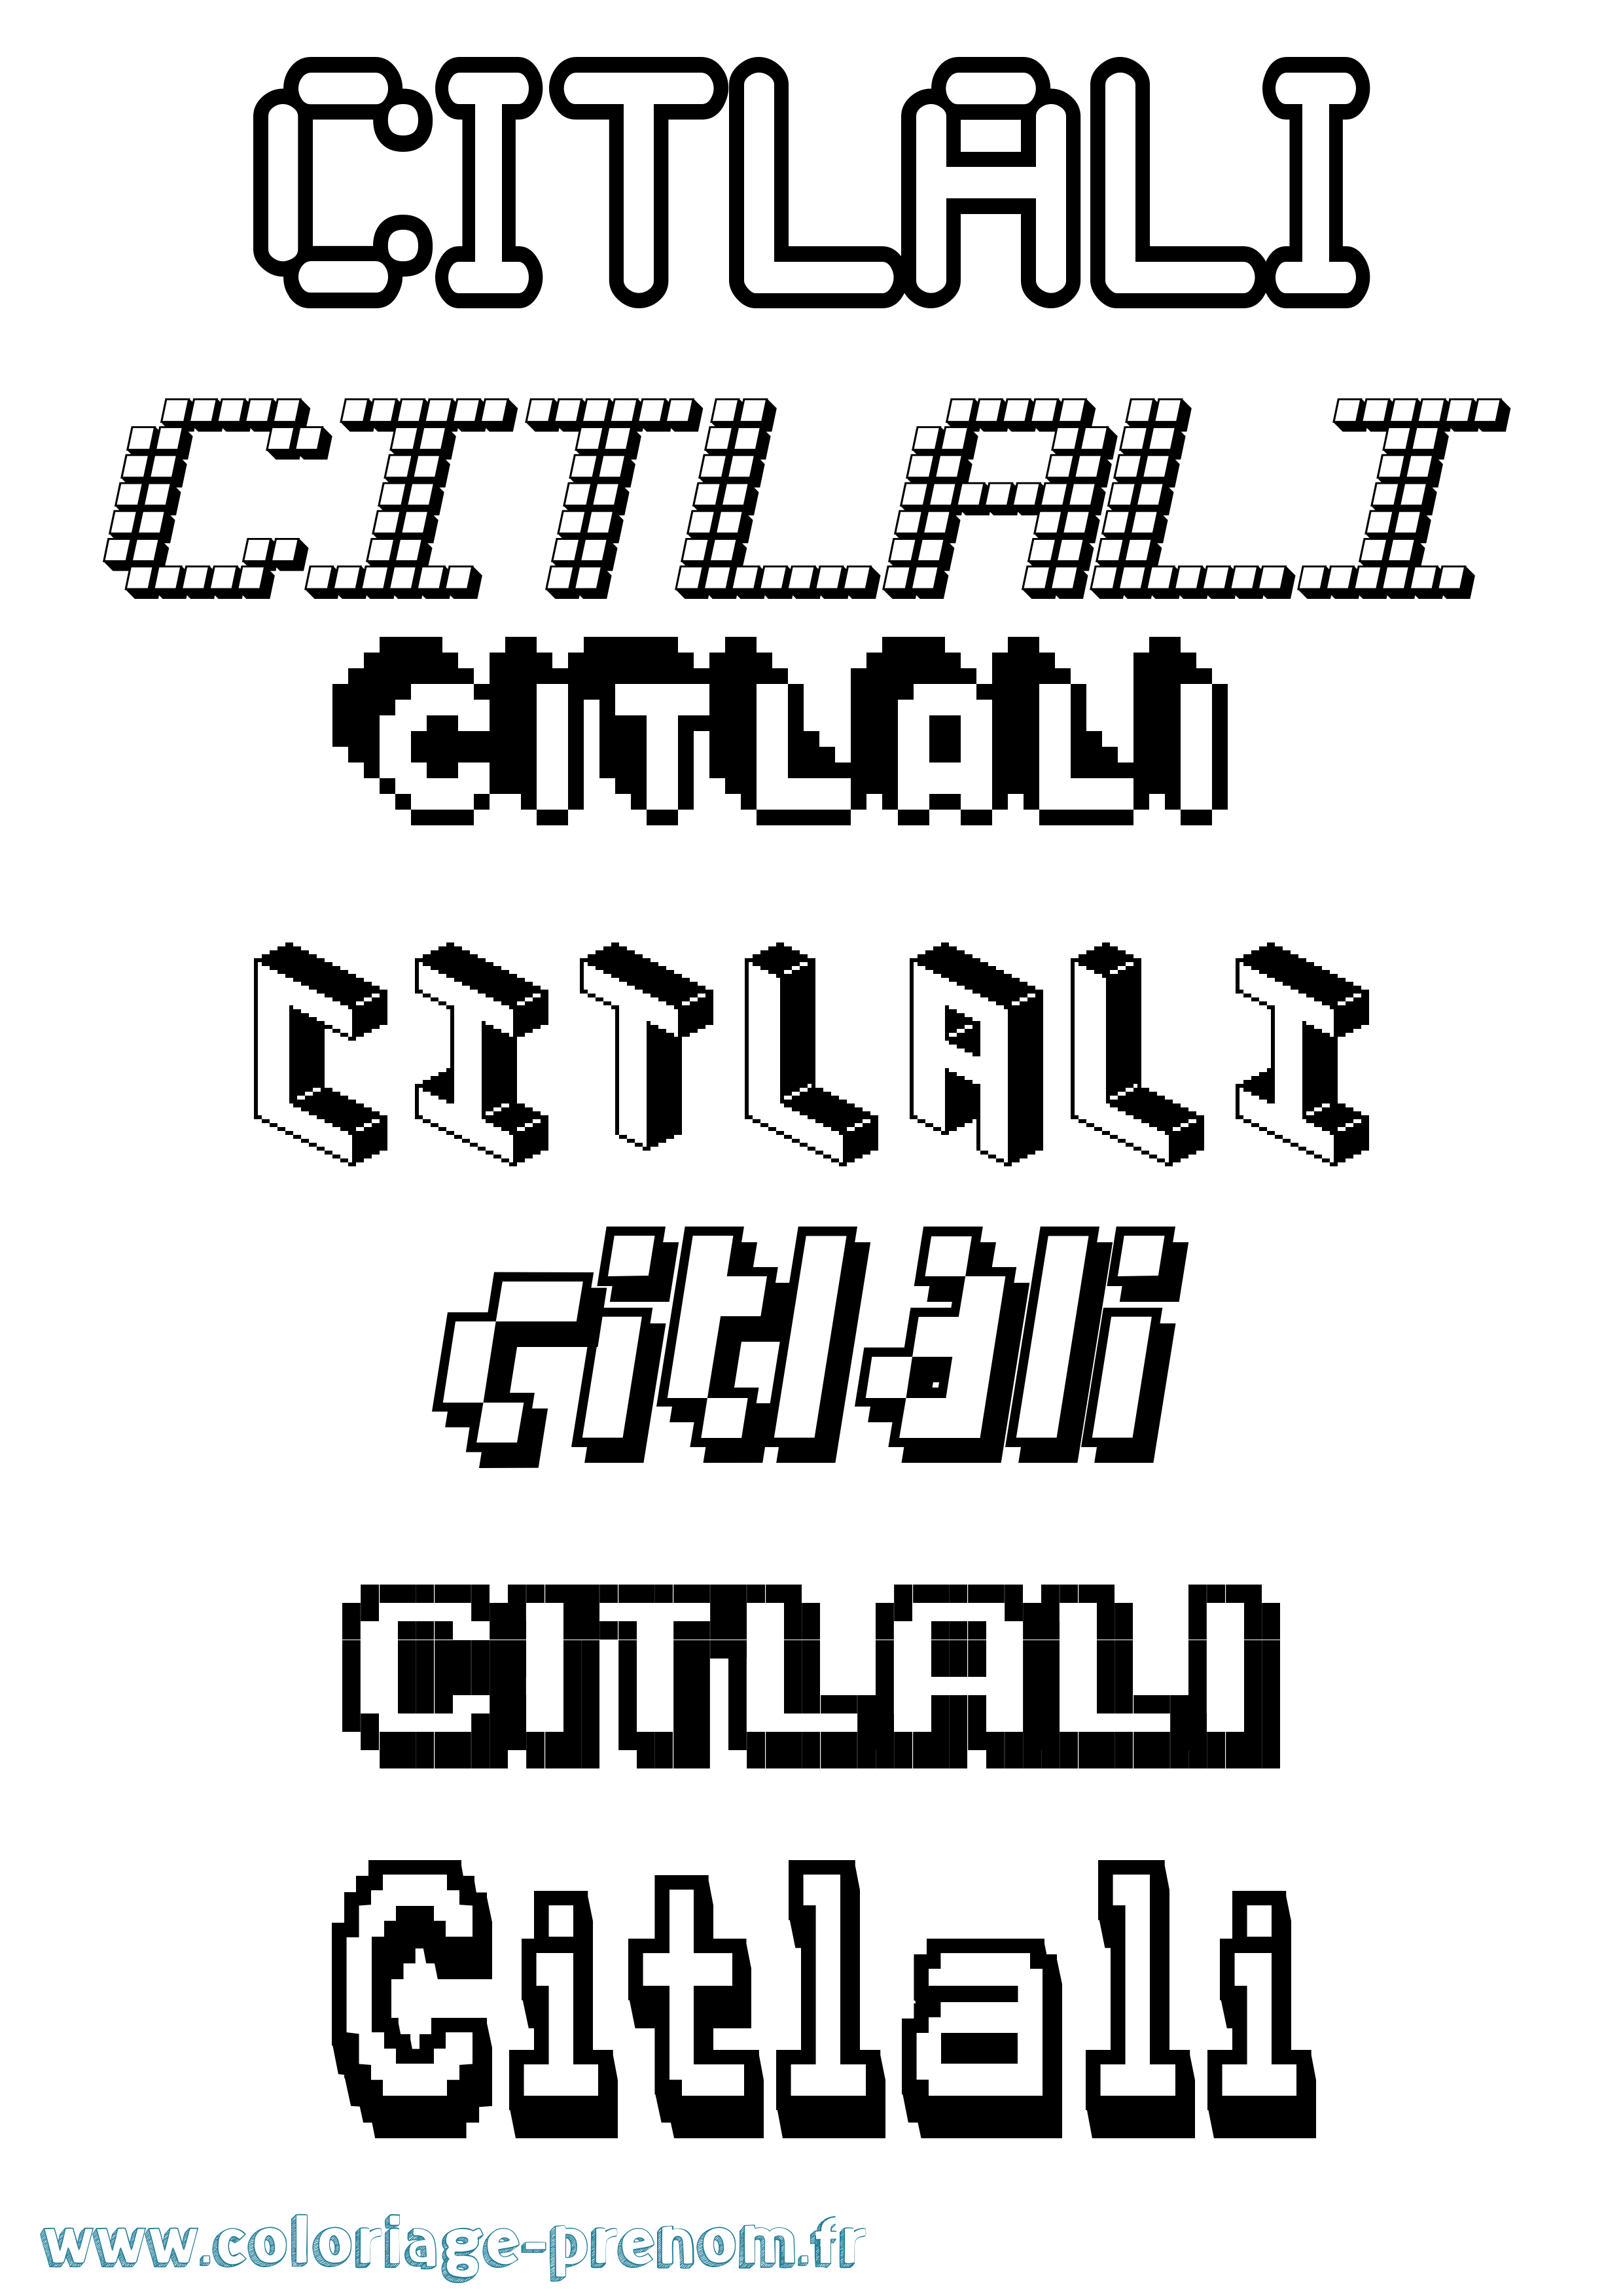 Coloriage prénom Citlali Pixel